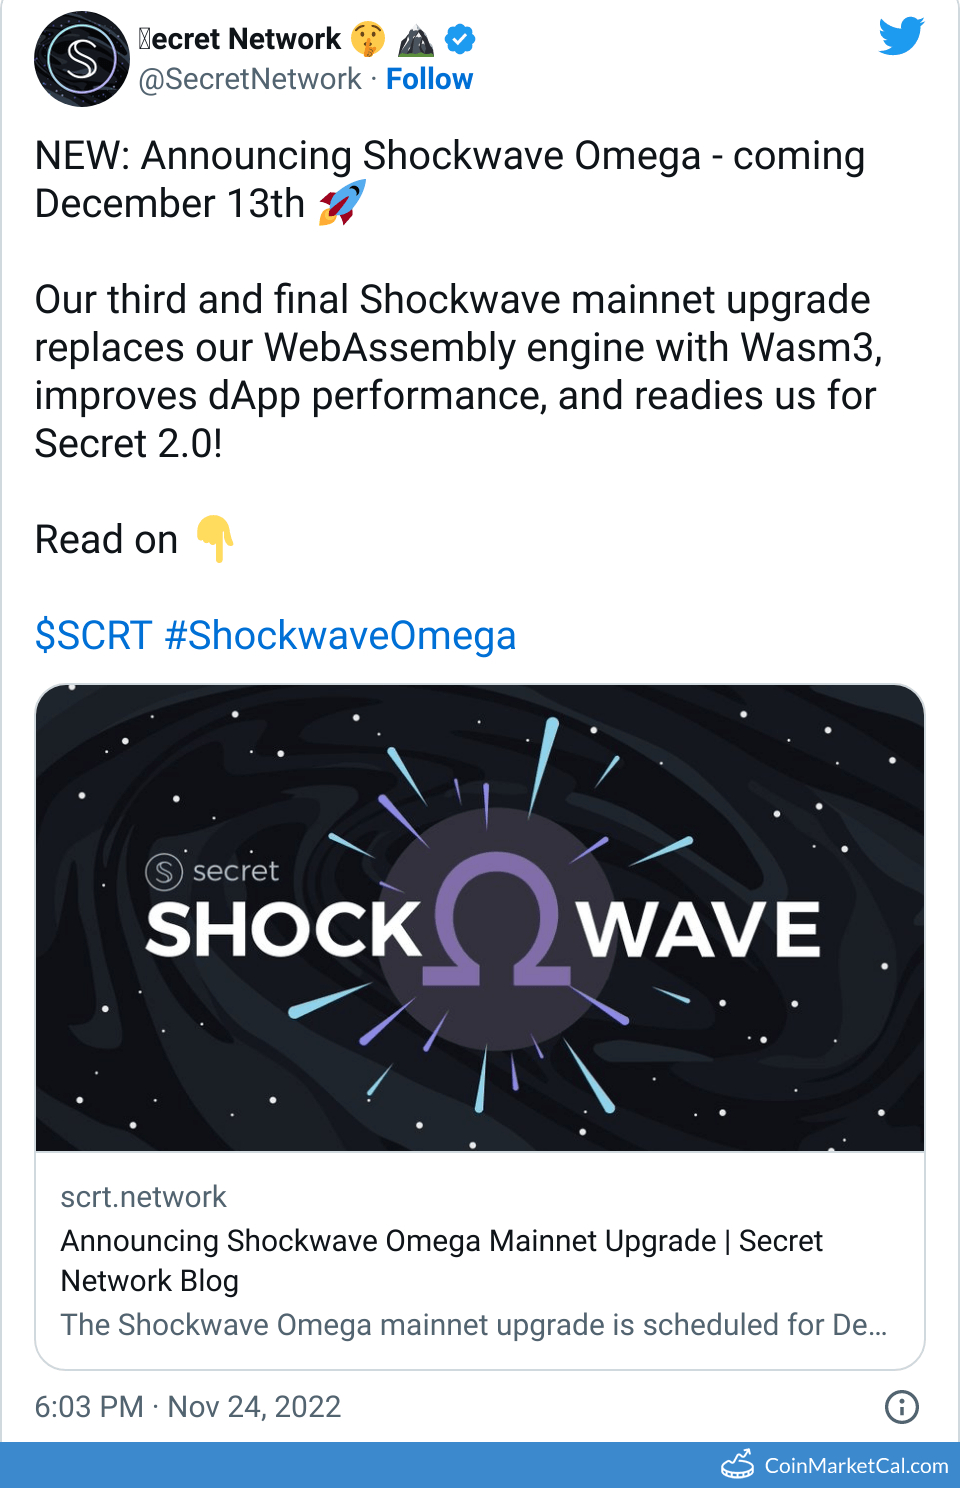 Shockwave Omega image